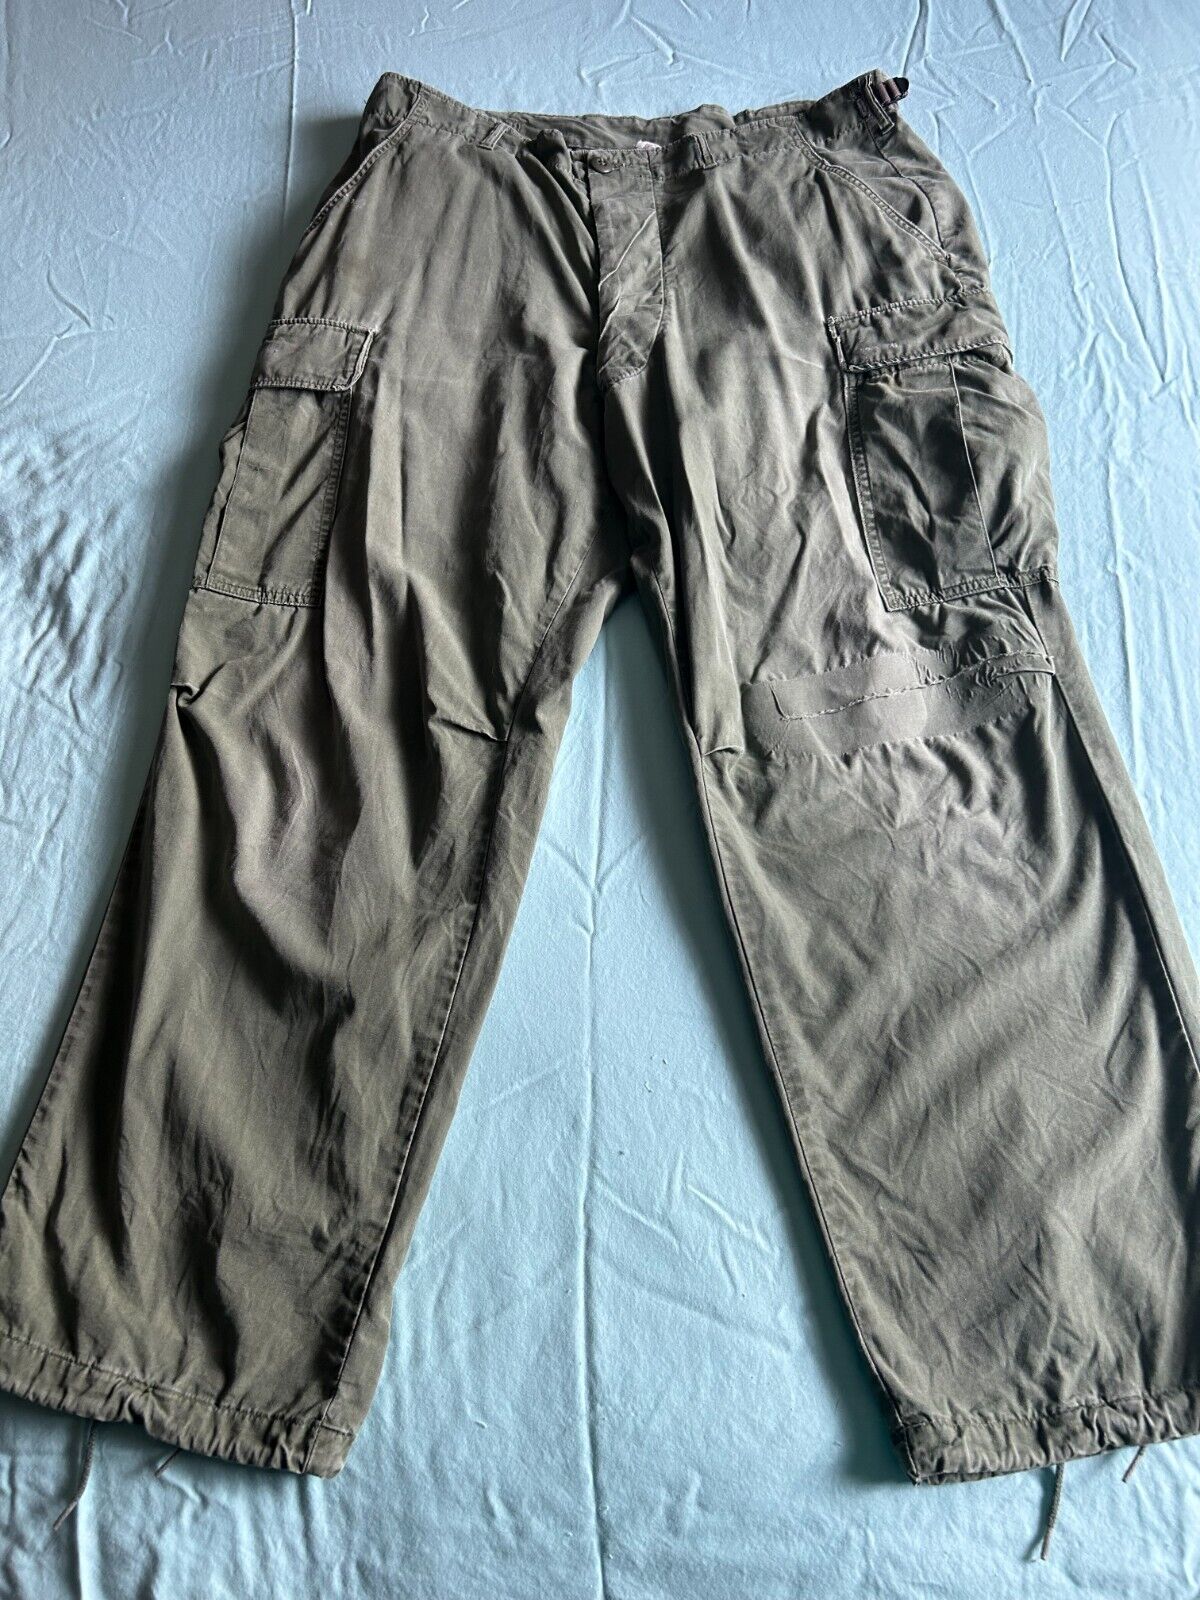 Vietnam War Jungle trousers, 2nd pattern, LG-Short, 36-39 waist